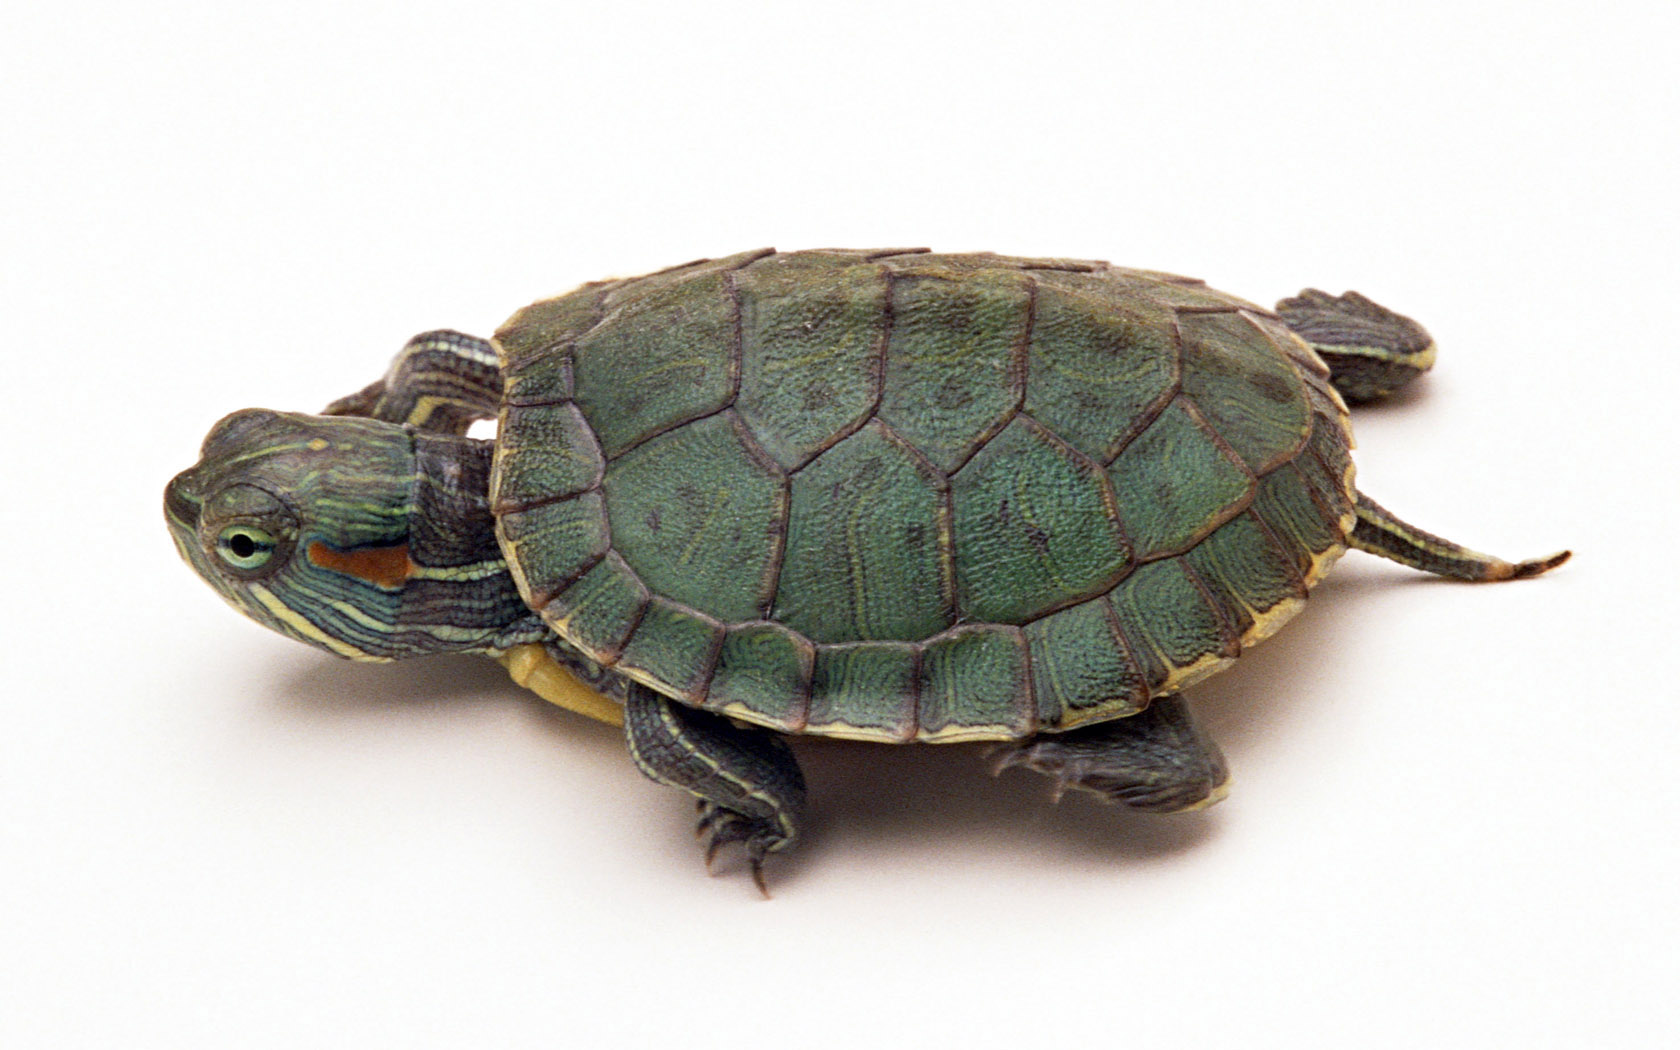 巴西龟怎么变成绿毛龟